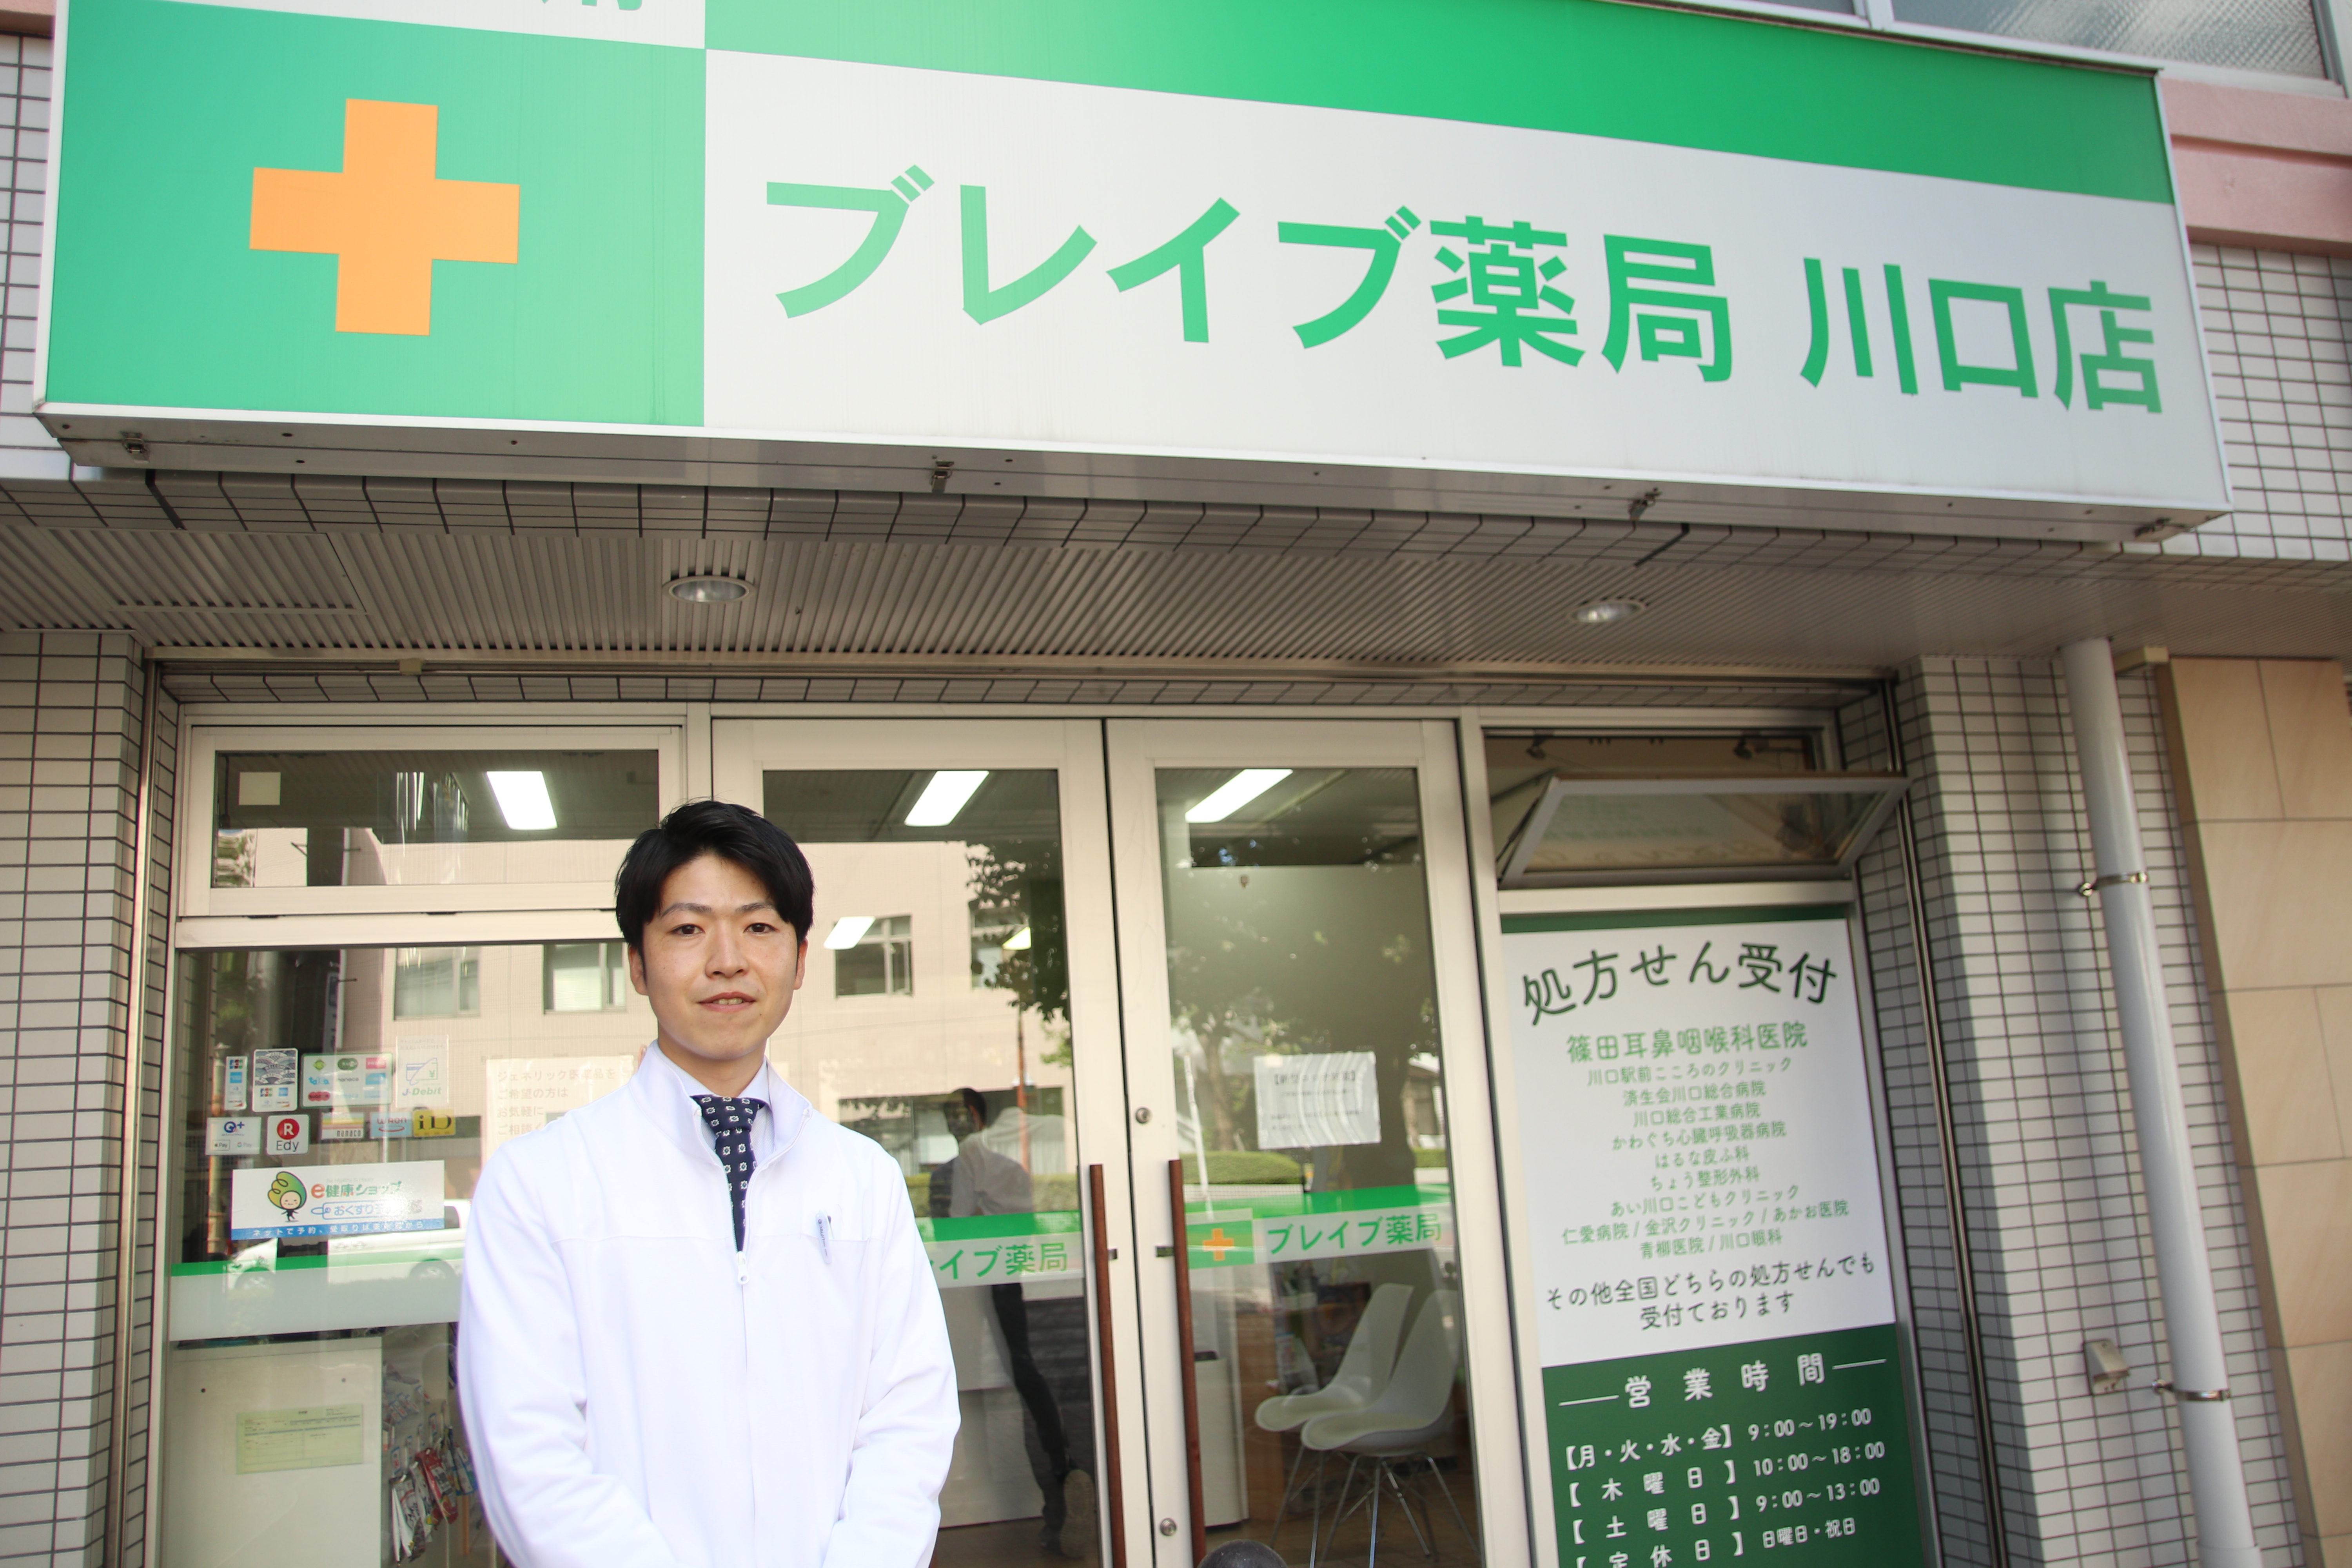 「門前からの脱却。熊本市における在宅医療のあり方を率先して変えていきたい」【Kirari prime service】